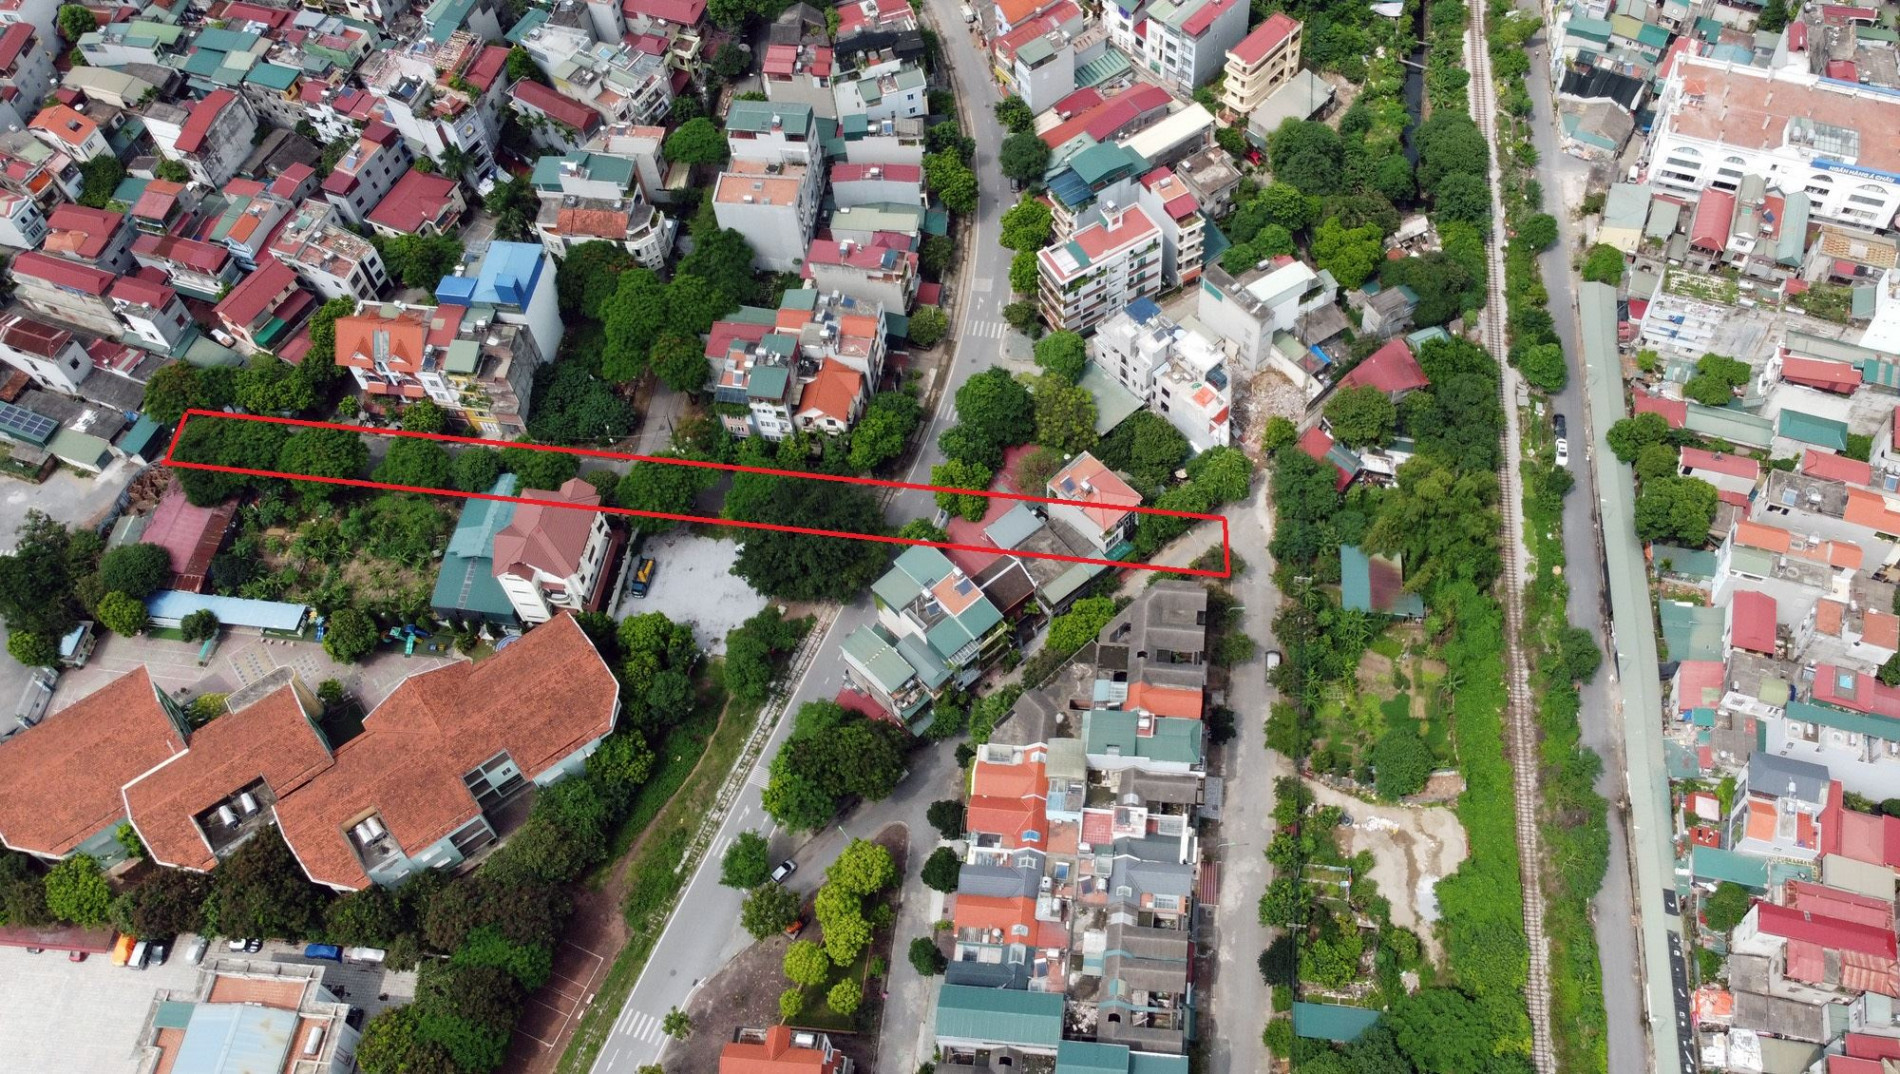 Đường sẽ mở theo quy hoạch ở phường Thượng Thanh, Long Biên, Hà Nội (phần 9)